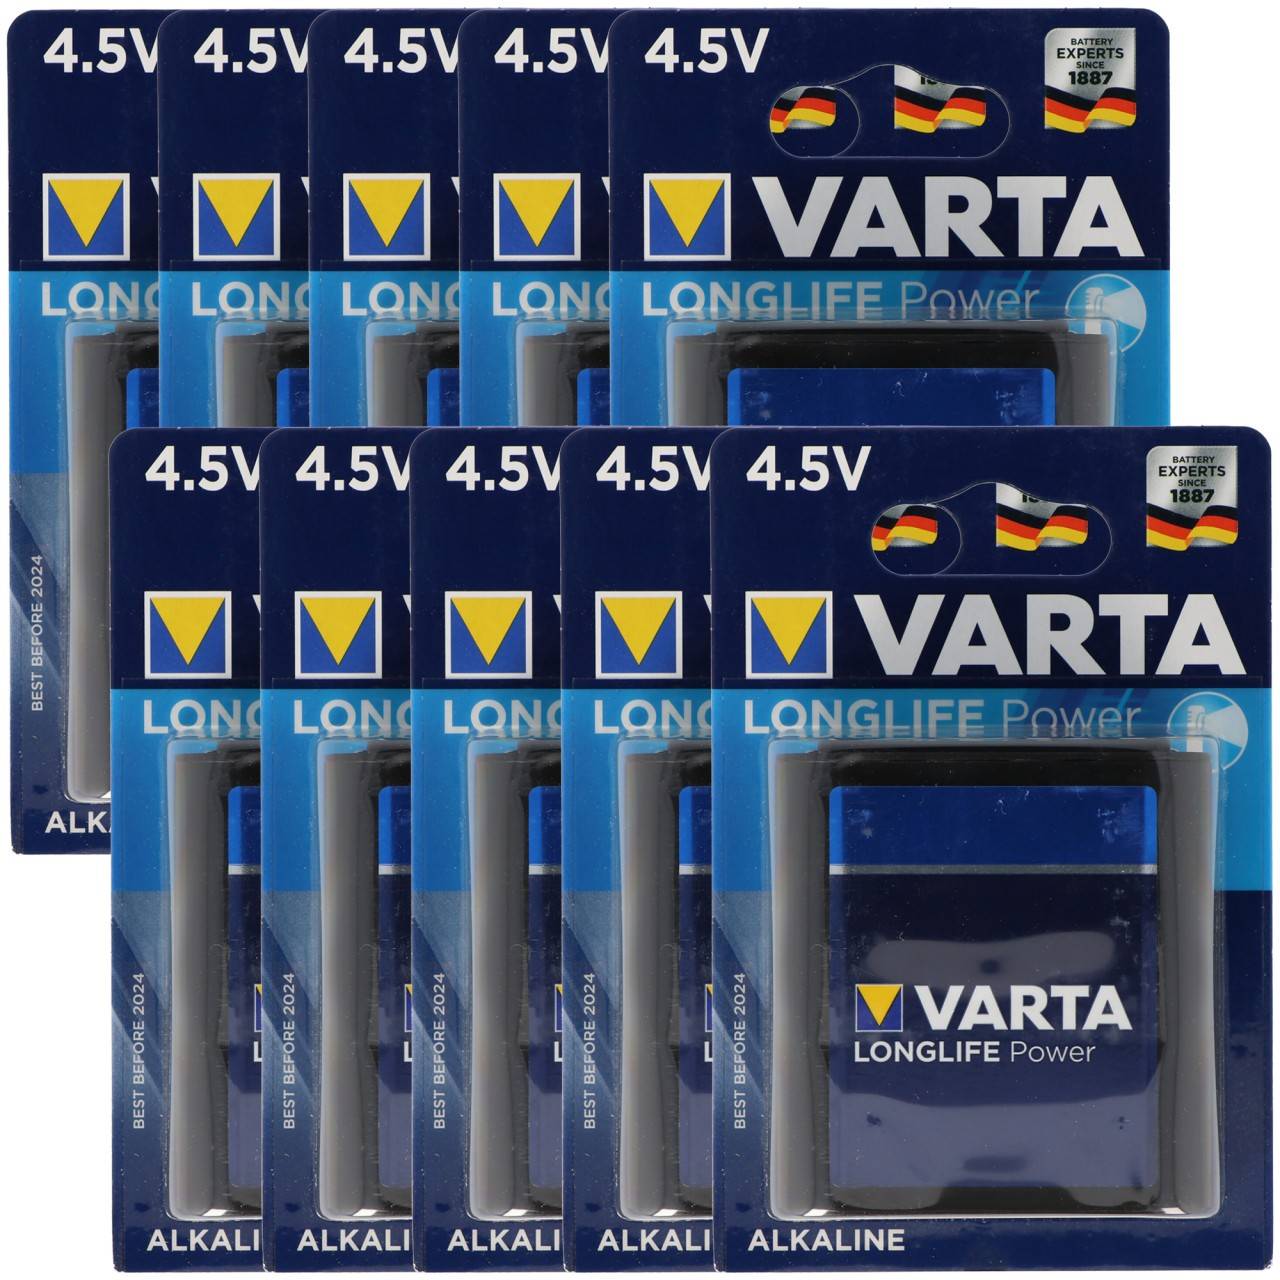 Varta Longlife Power ehem. High Energy 4912 Flachbatterie 4,5V, MN1203,  3LR12, 3LR12P 10er Box kaufen